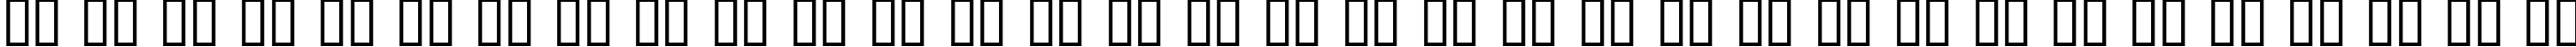 Пример написания русского алфавита шрифтом Epoque